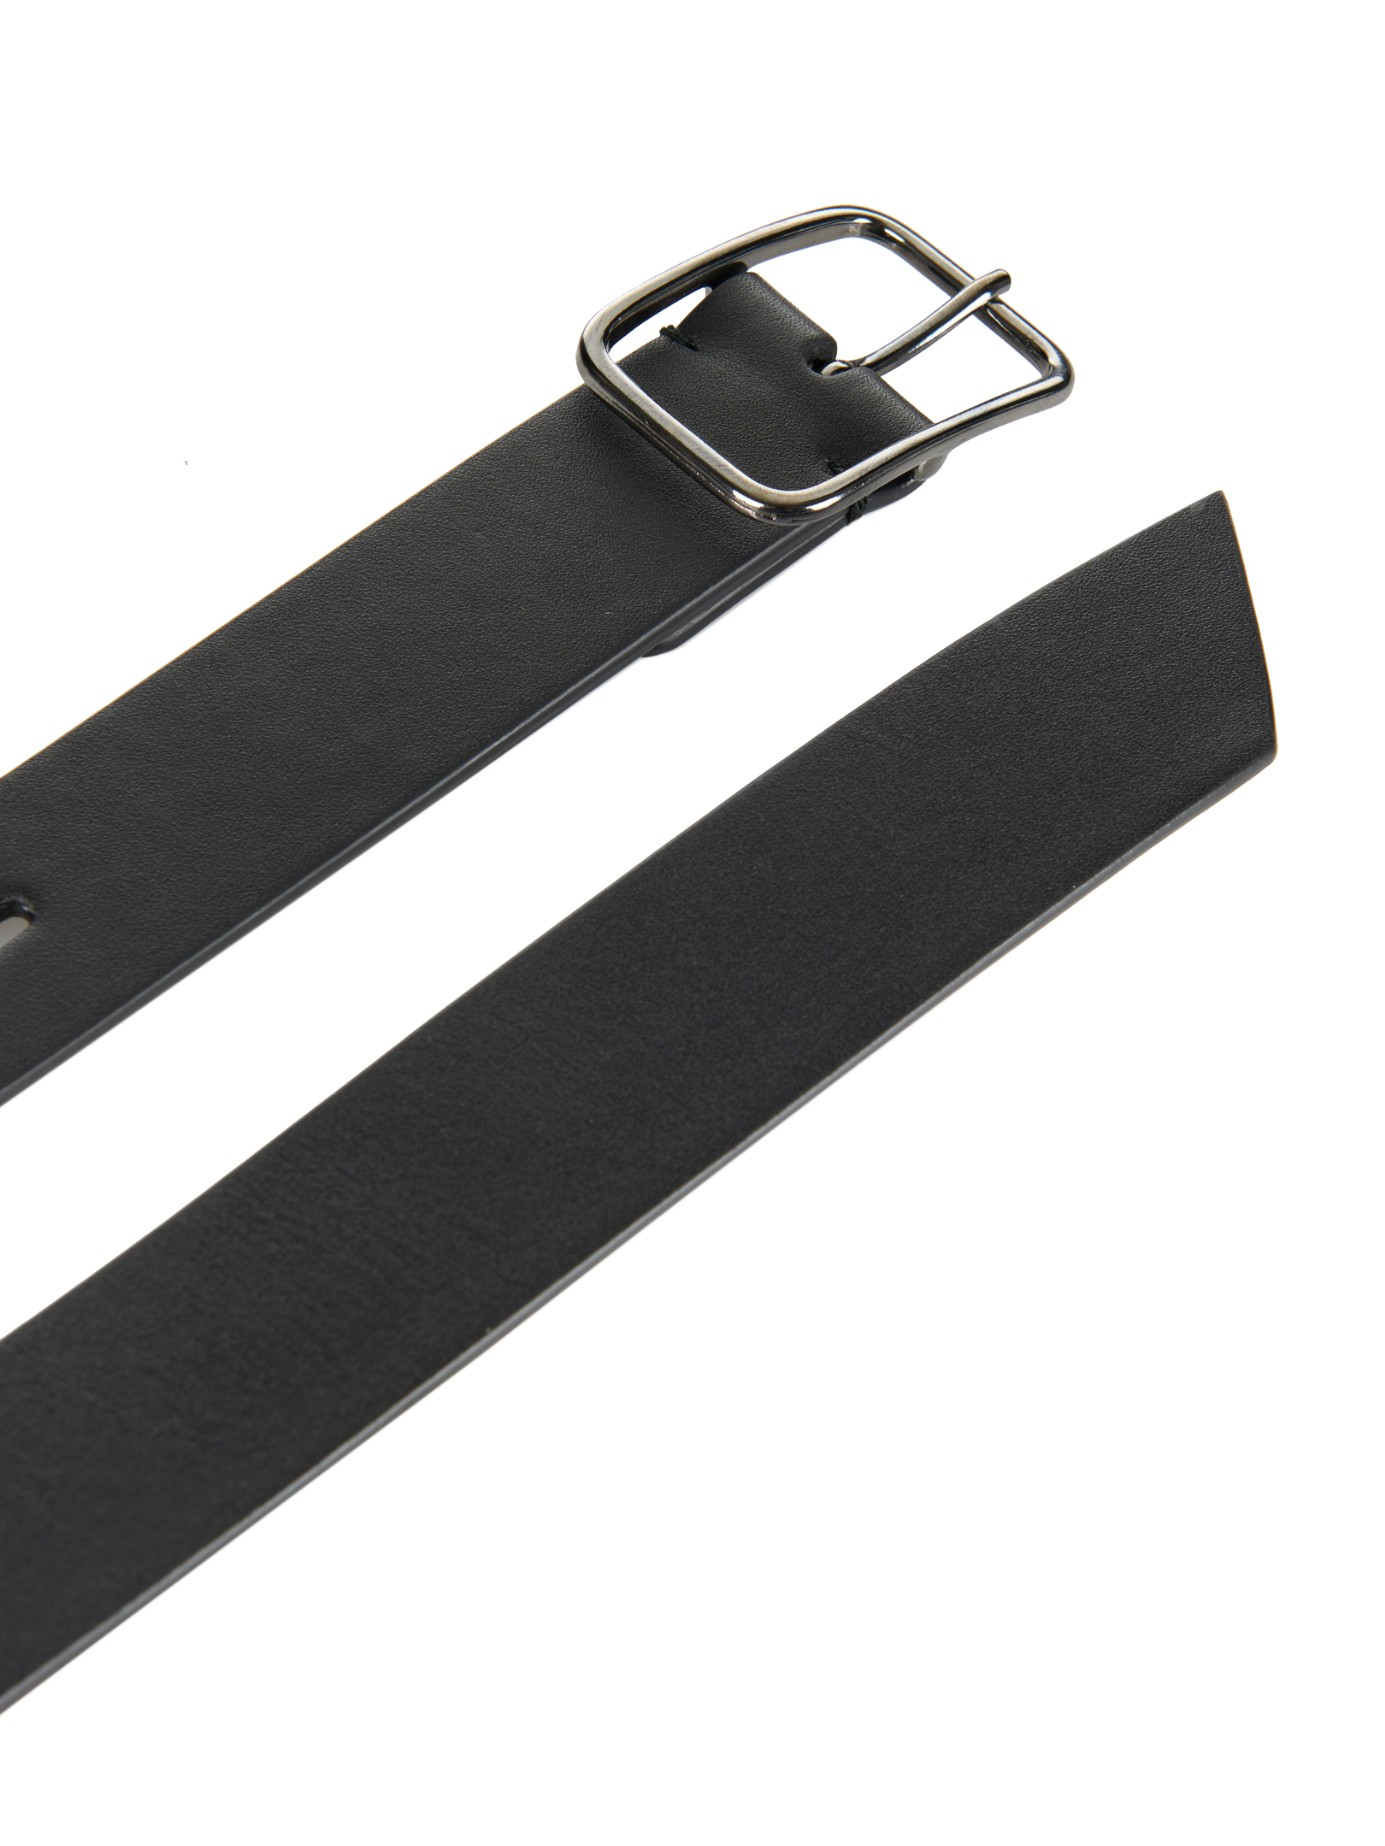 Jil Sander Calf-Leather Belt in Black for Men - Lyst